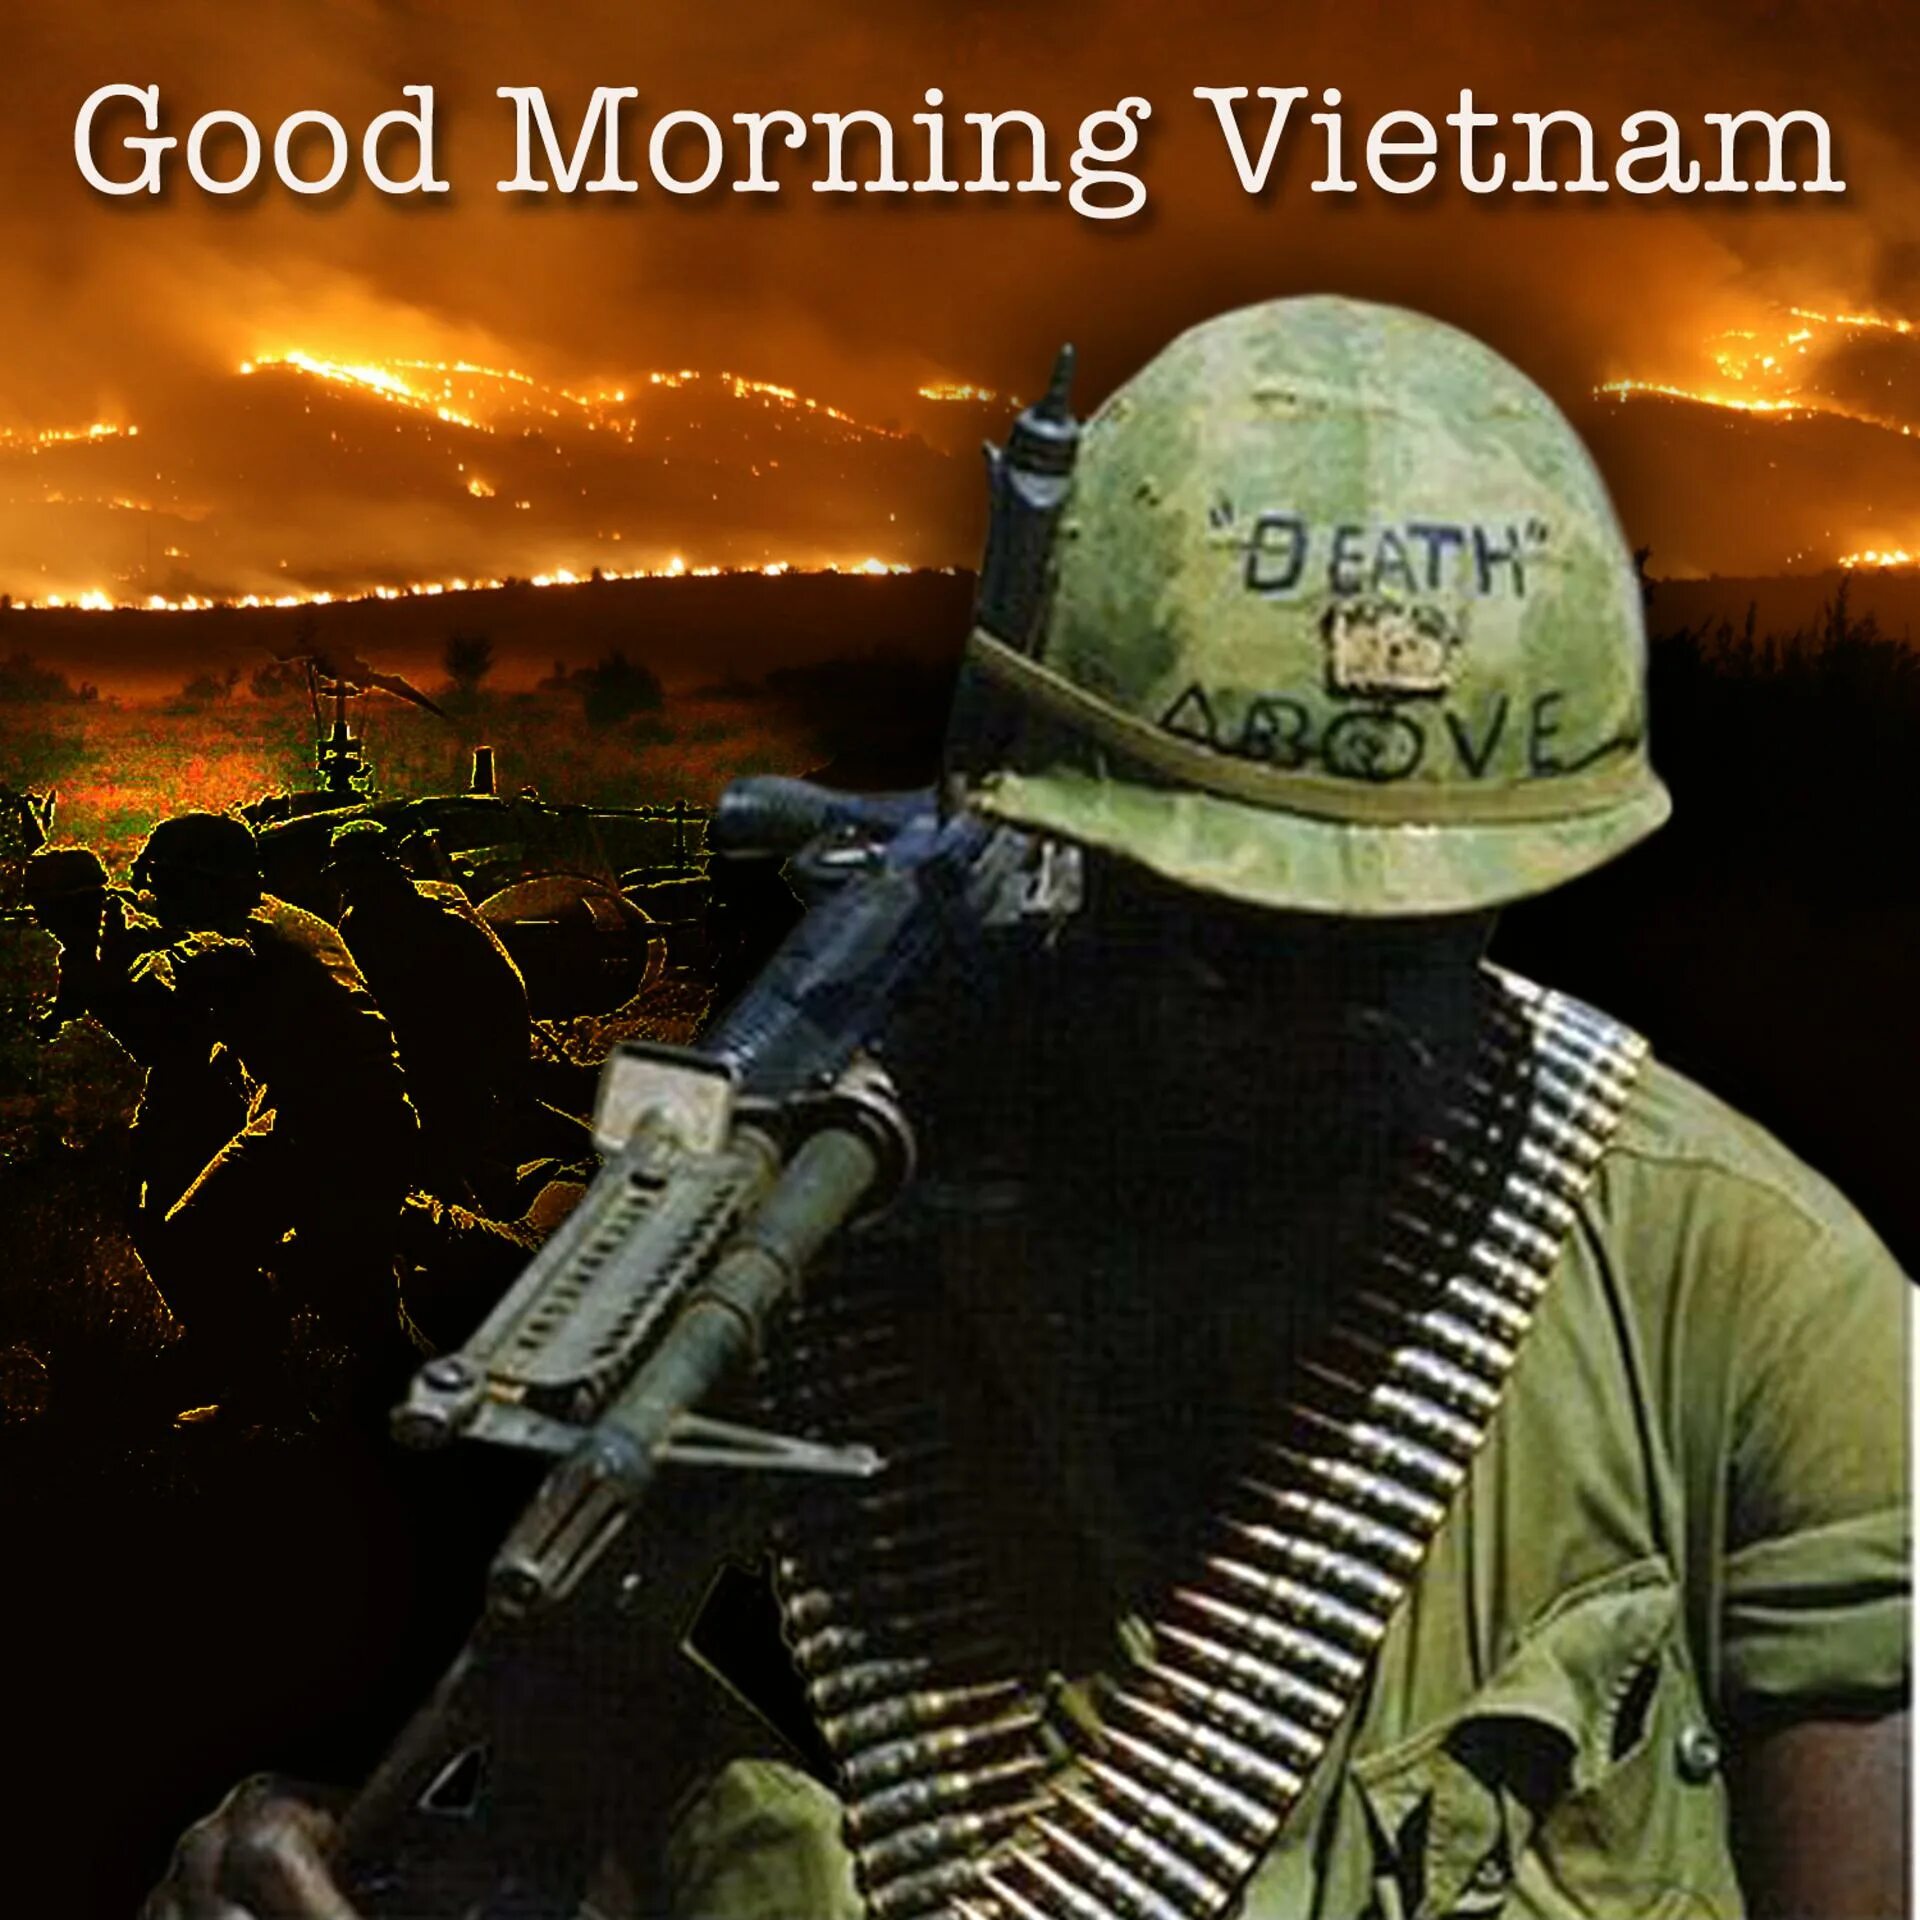 Good morning vietnam будильник люцифер. Гуууууууд морнинг Вьетнам. Гуд морнинг Вьетнам песня. Гуд Монинг Вьетнам Мем. Доброе утро Вьетнам.